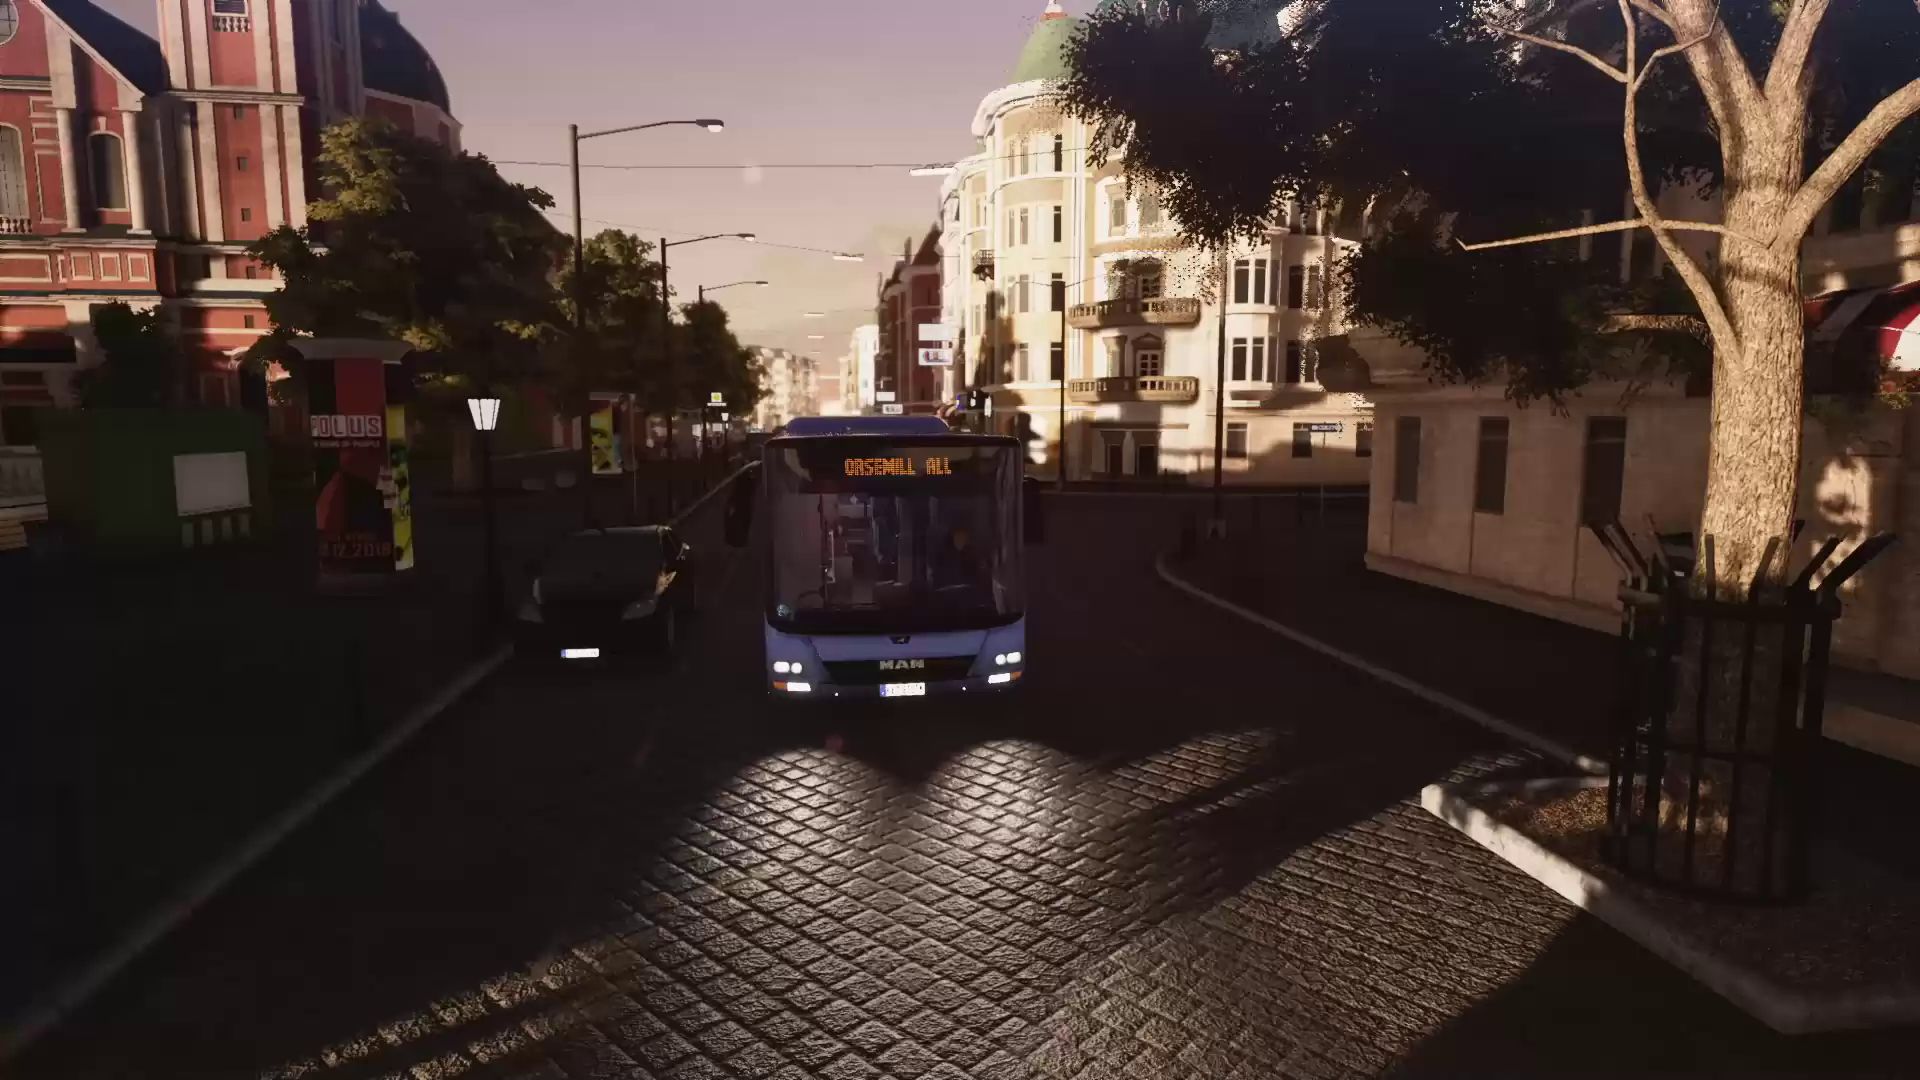 Bus Simulator 18: Тизер игры